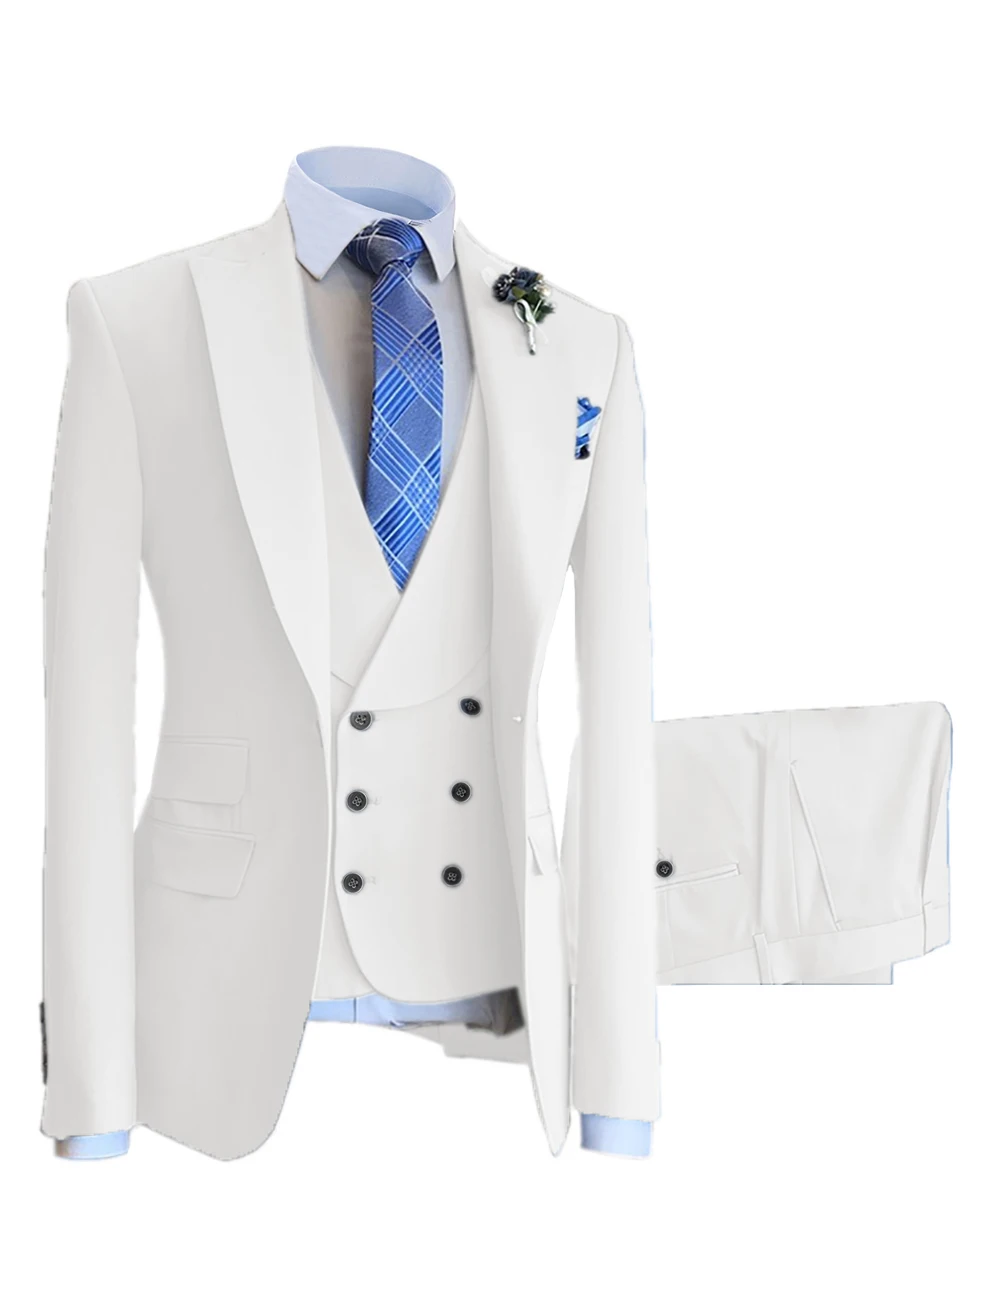 Высококачественные классические мужские костюмы, джентльменский комплект, однотонный пиджак с воротником-стойкой, брюки, рубашка, идеально подходящие для деловых встреч и официальных мероприятий